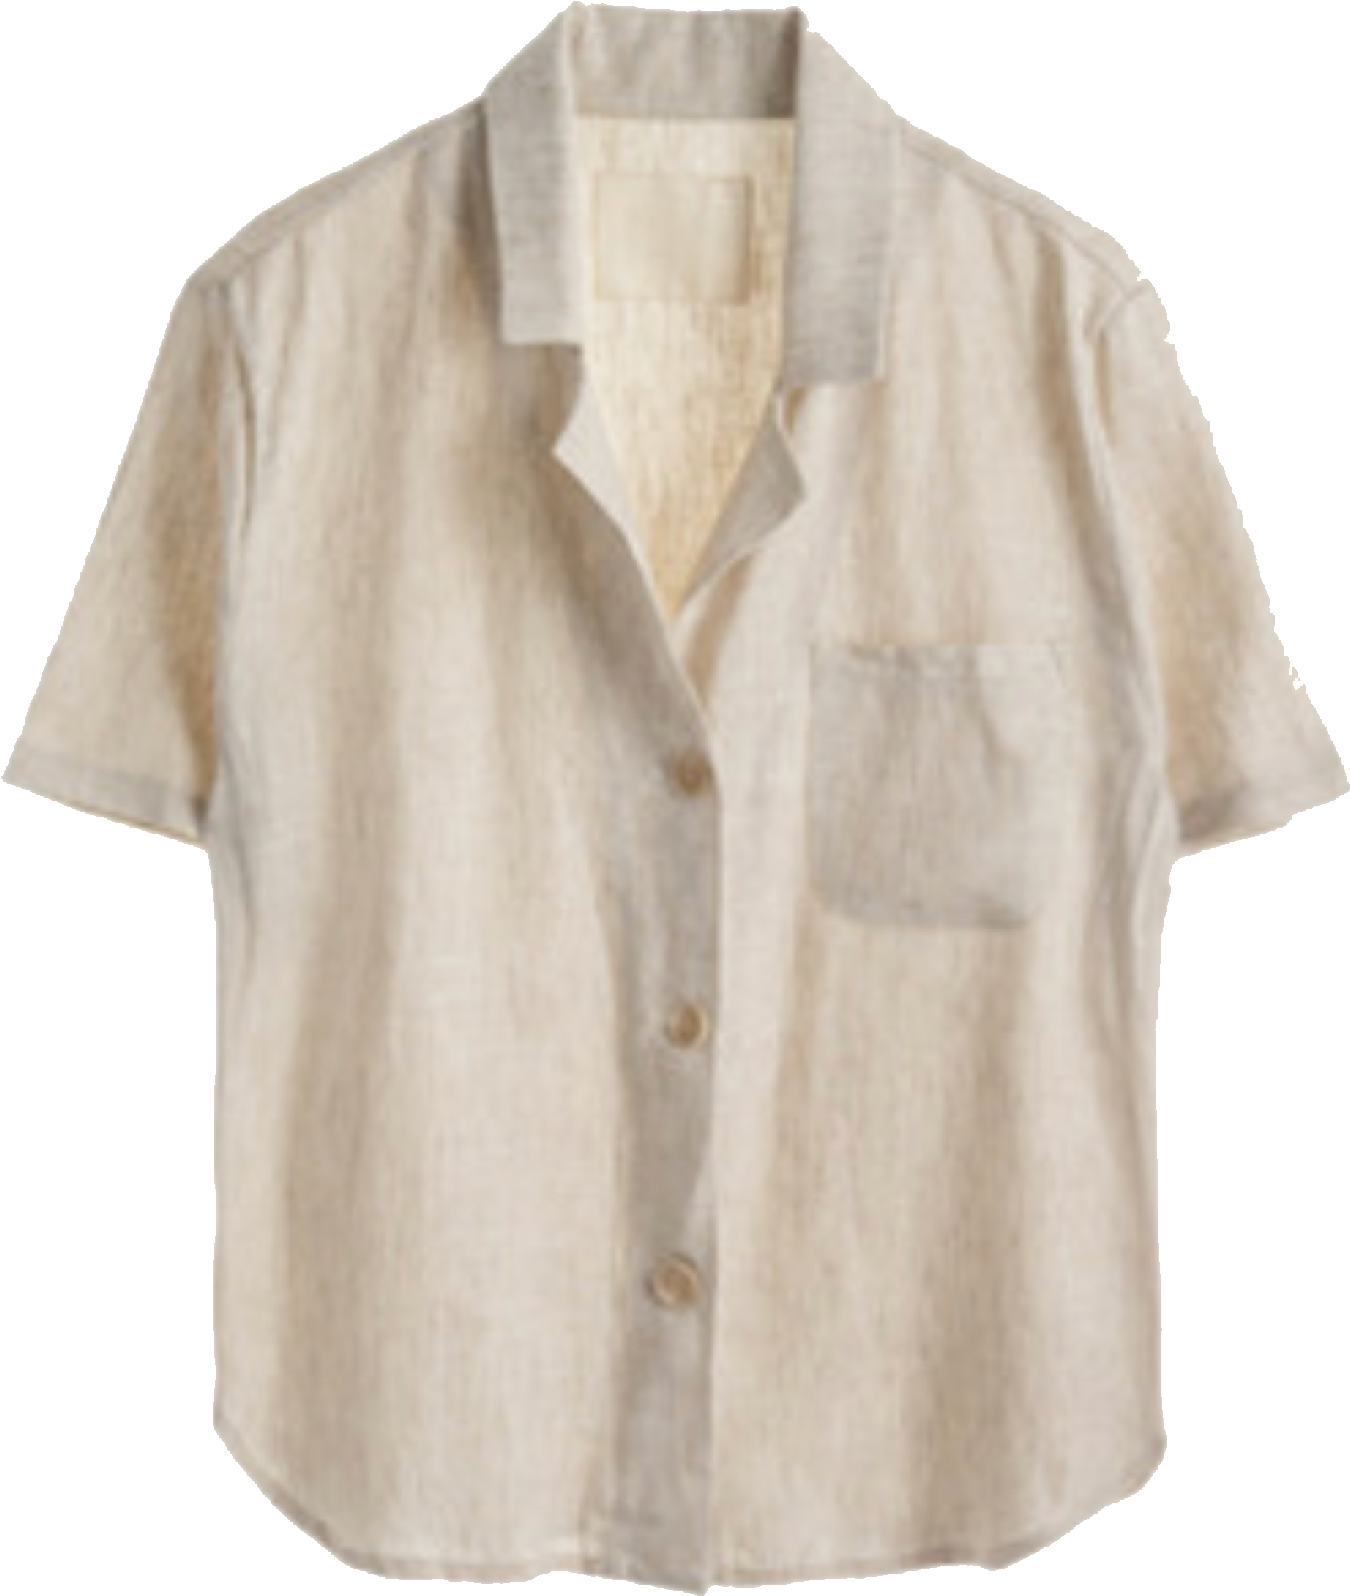 Beige Short Sleeve Shirt PNG image